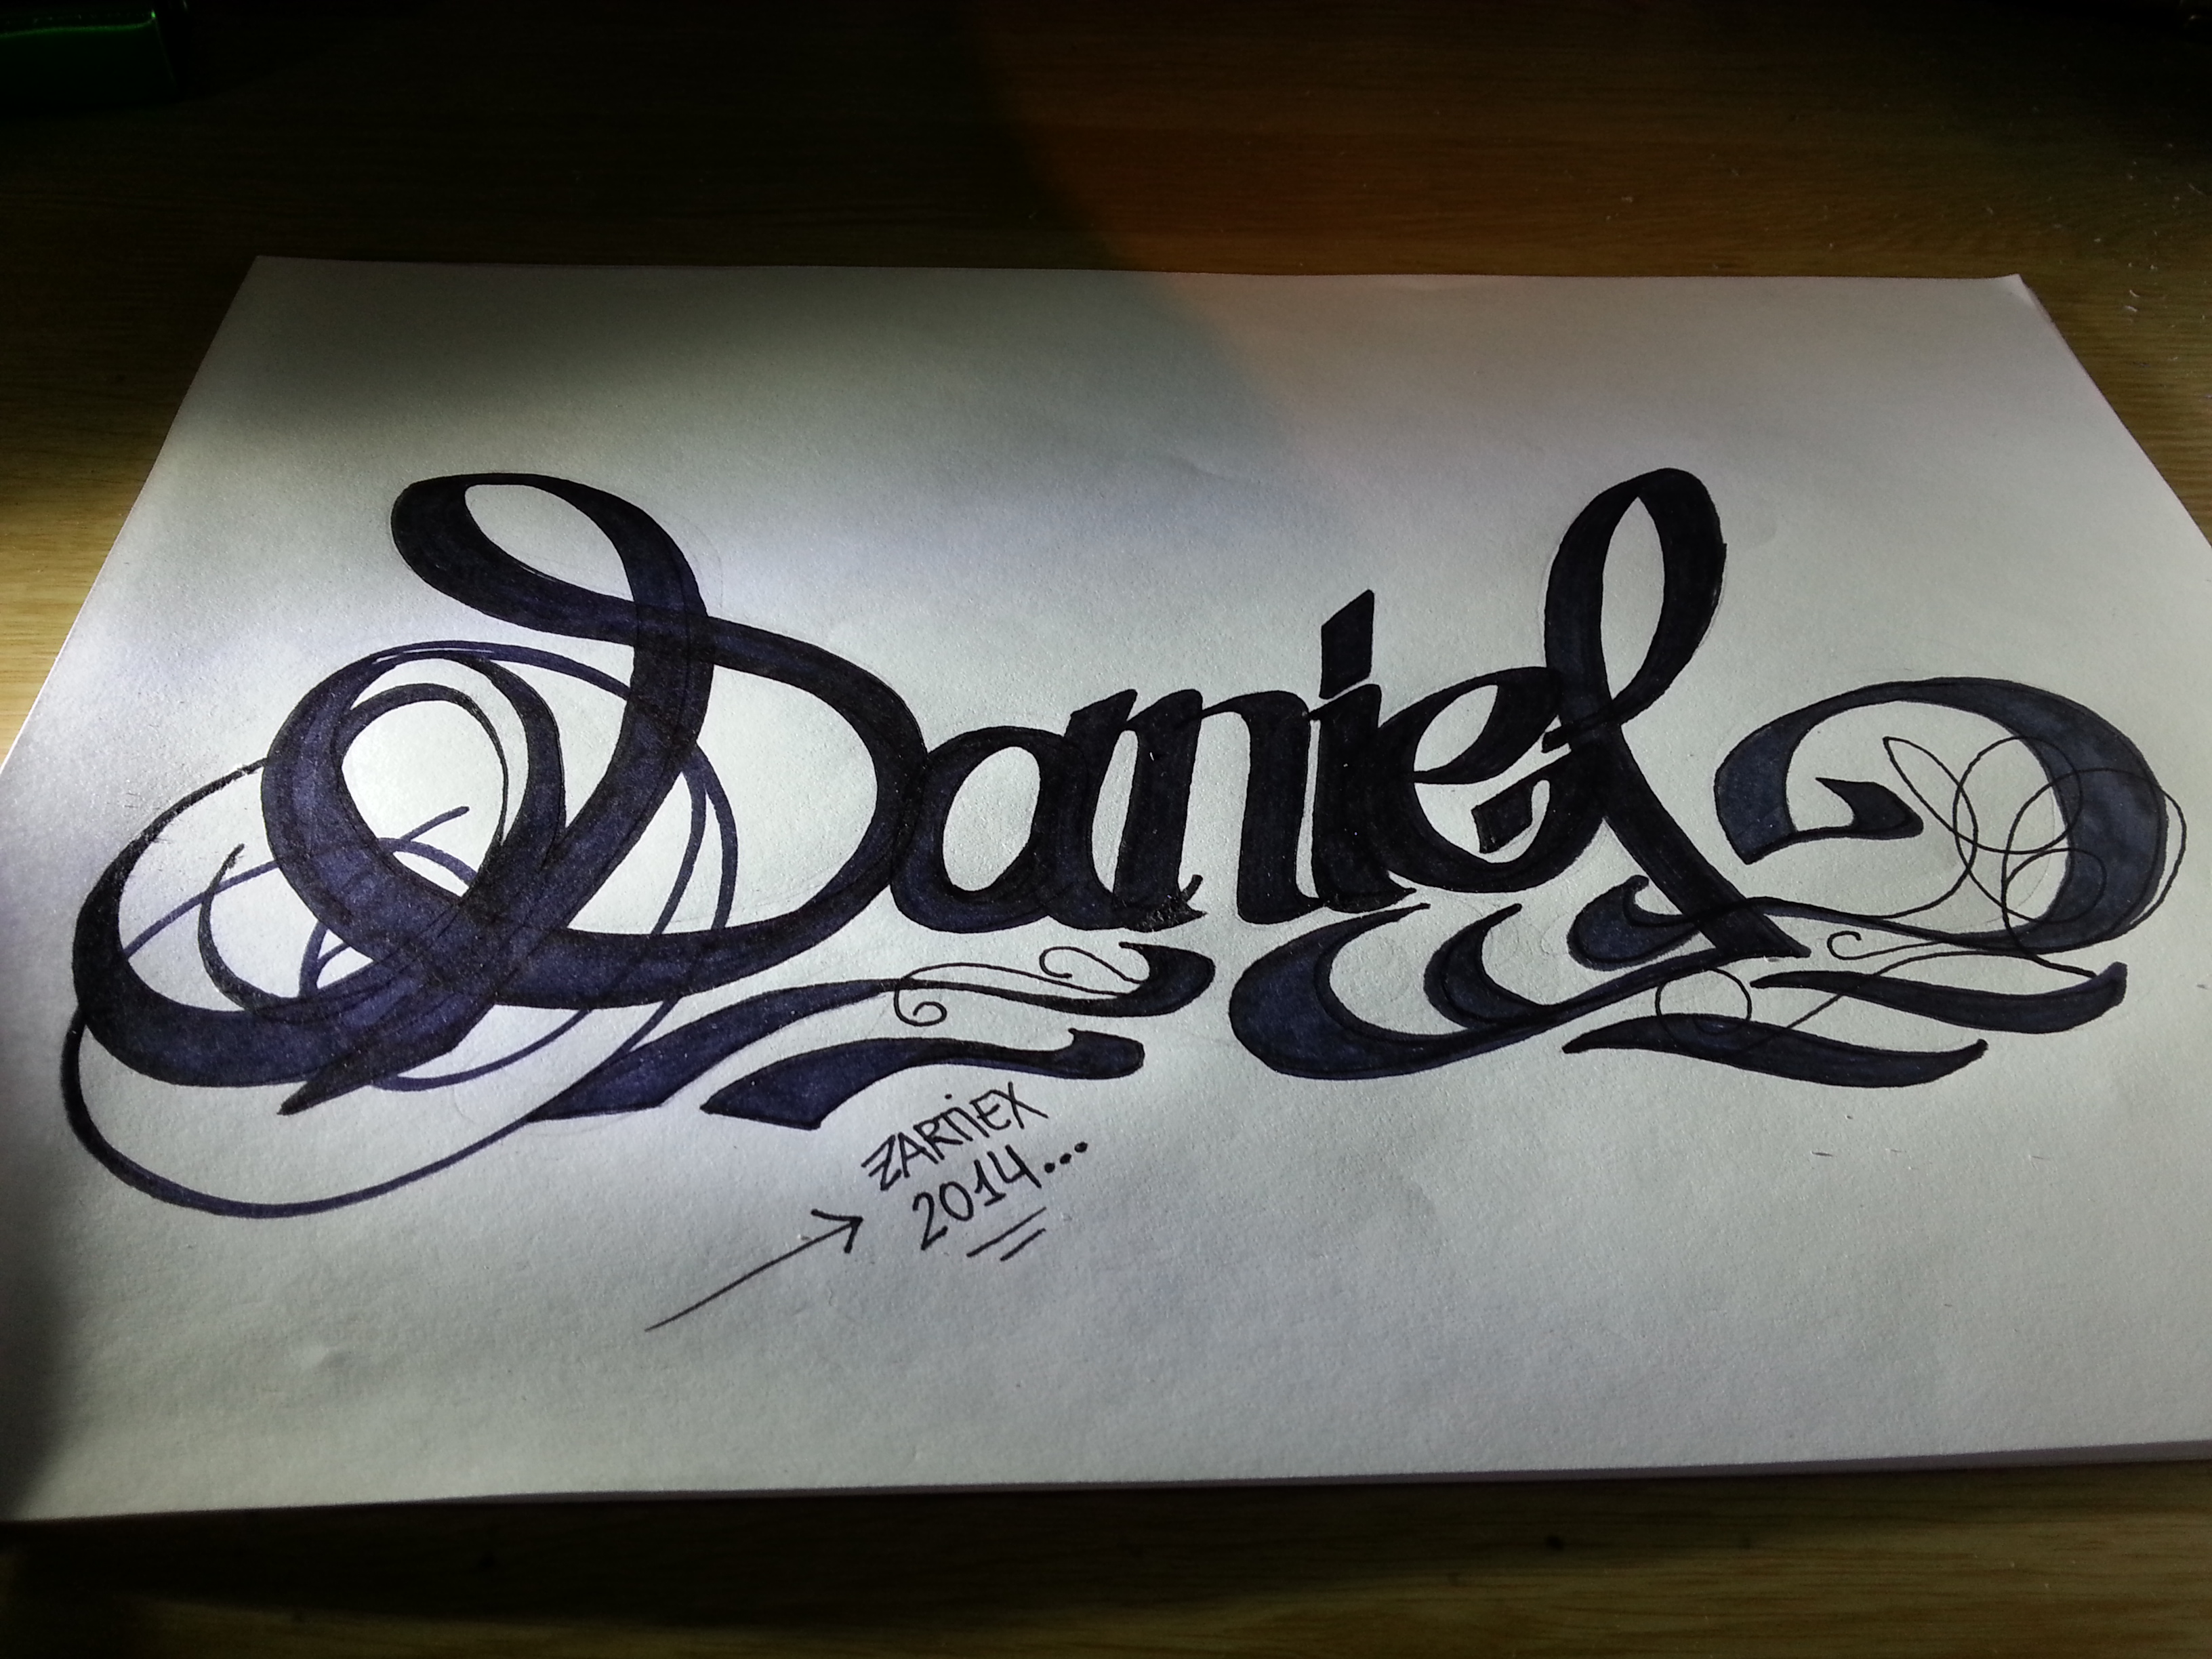 Graffiti-tattoo-lettering-ideas-names-nombres-tatu by Zartiex on DeviantArt